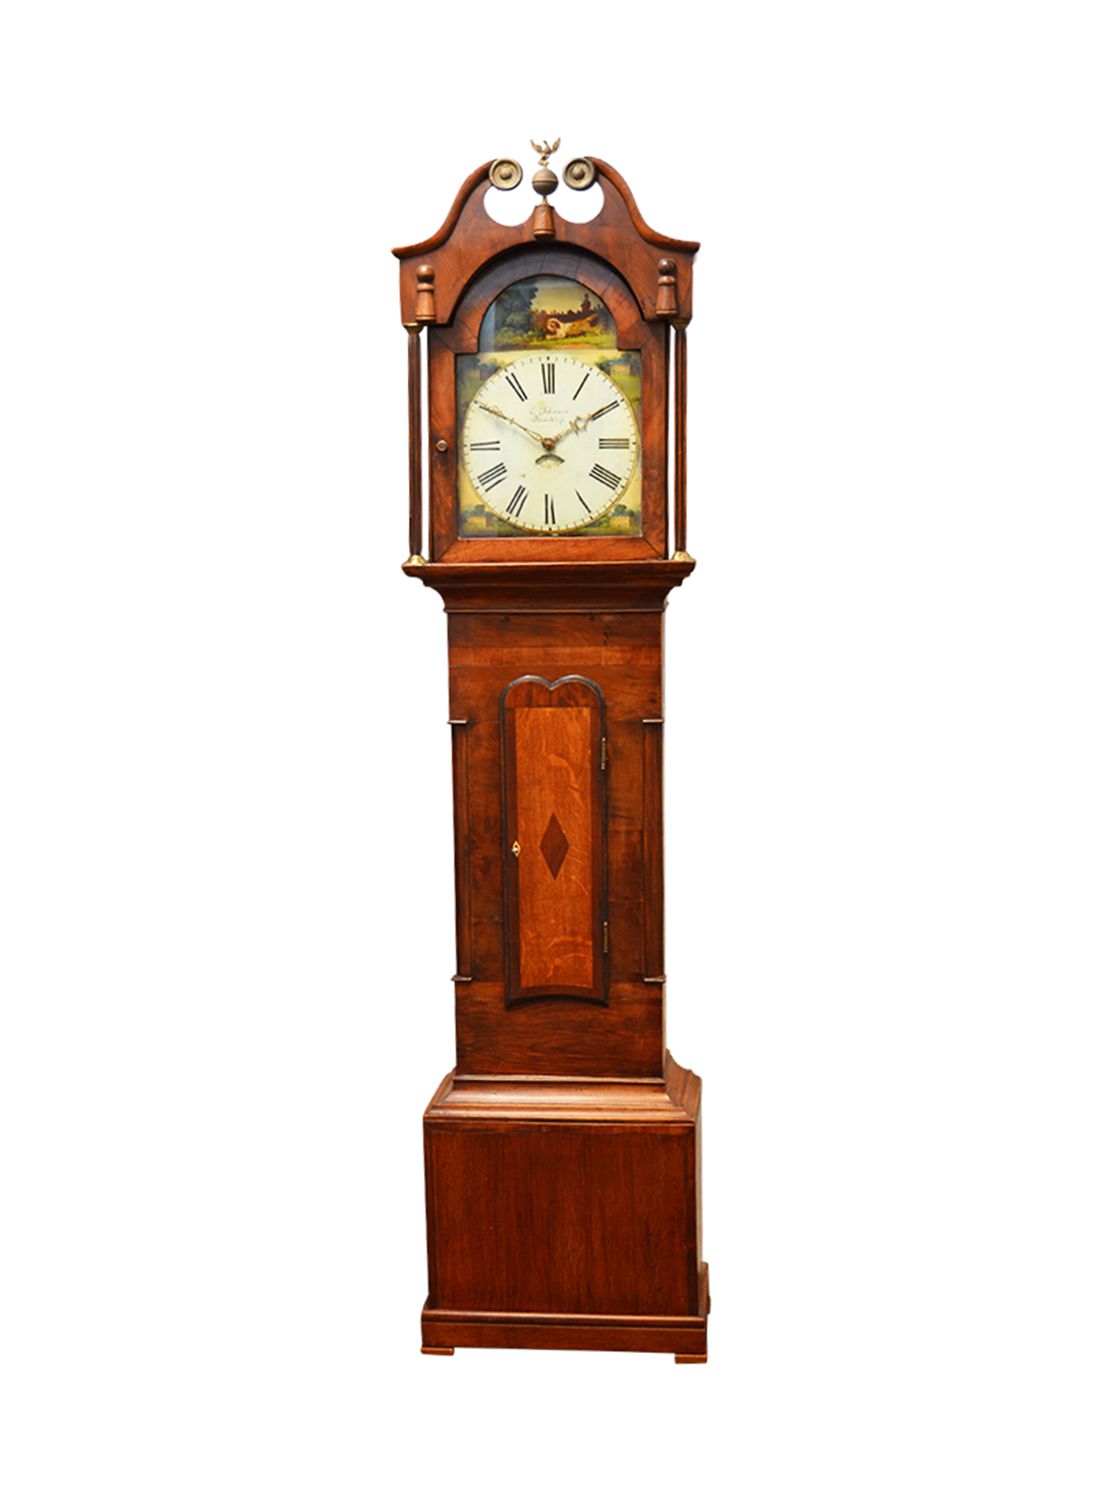 Supplement meesteres Groet Engelse mahonie houten staande klok kopen